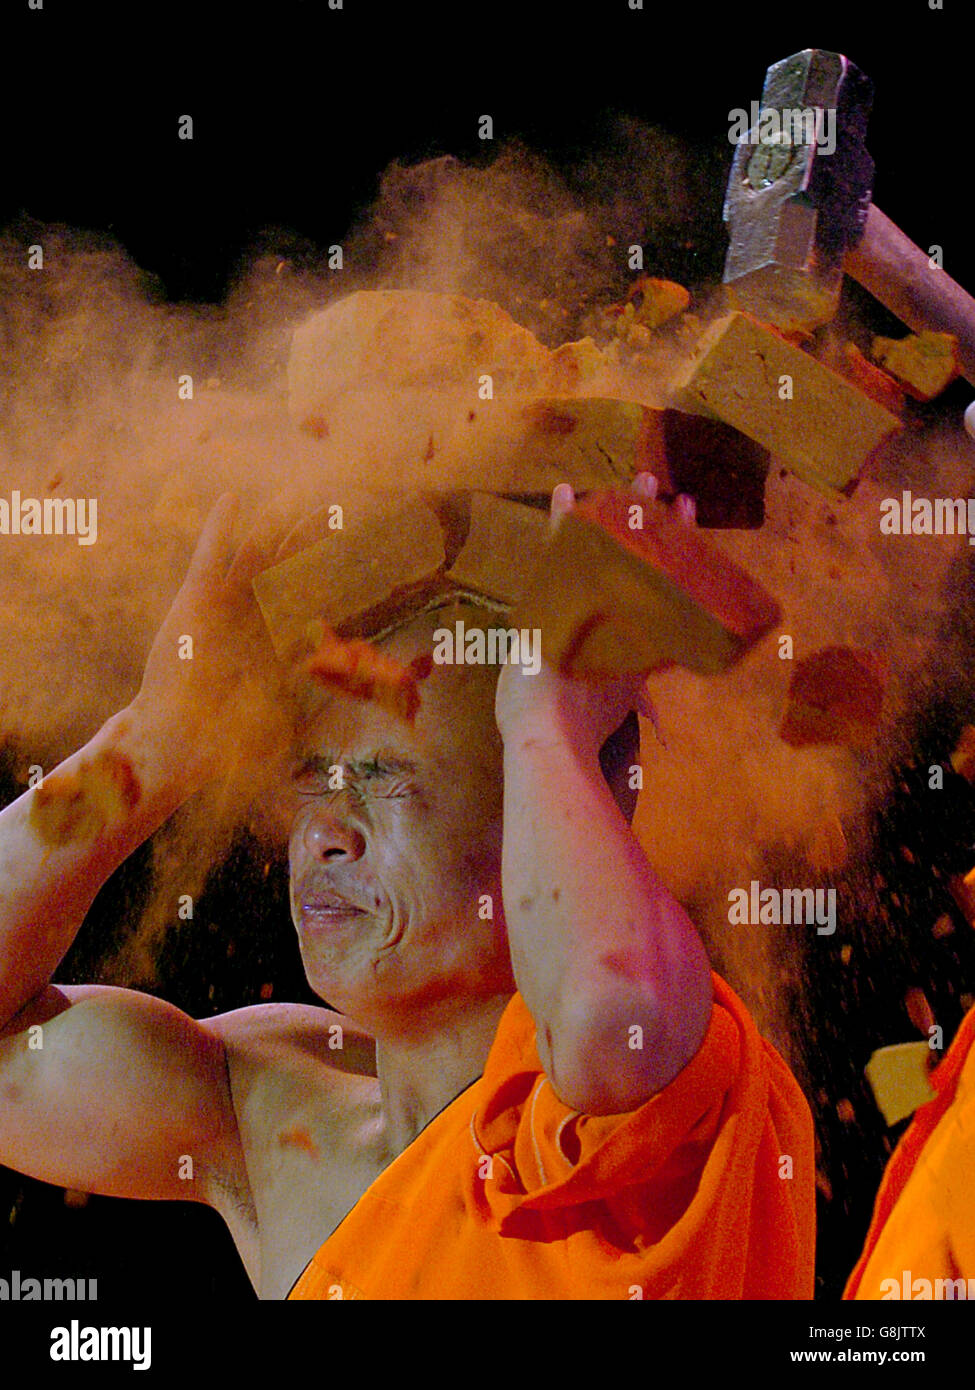 Song Atmin bricht während ihrer Show Ziegelsteine auf seinen Kopf. Stockfoto